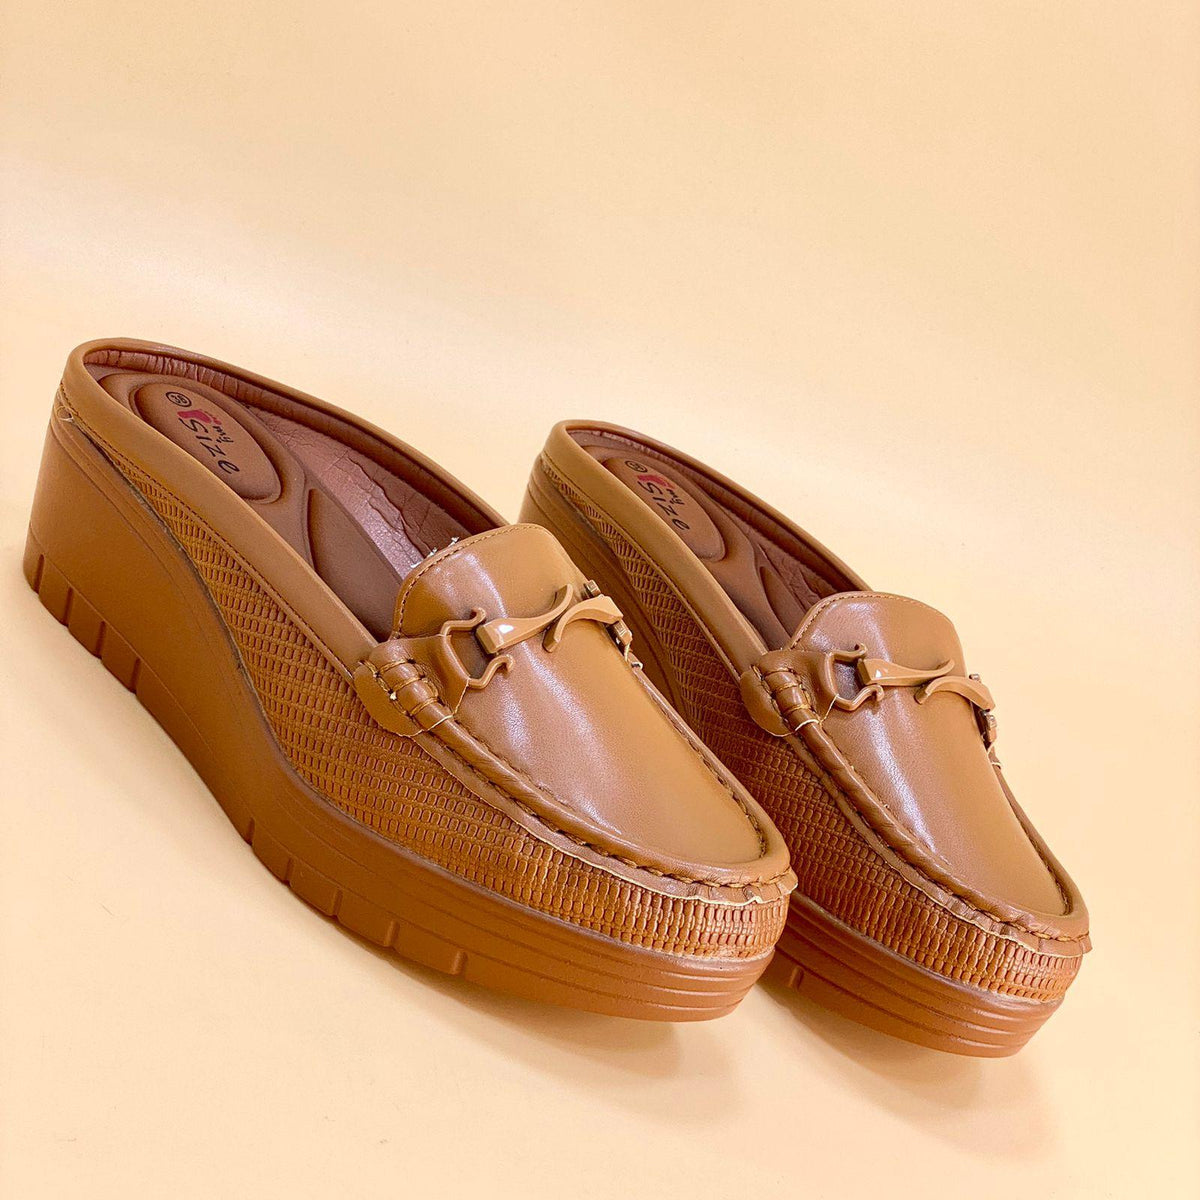 WOMEN SLIPPERS HEELS W707 - Olive Tree Shoes 